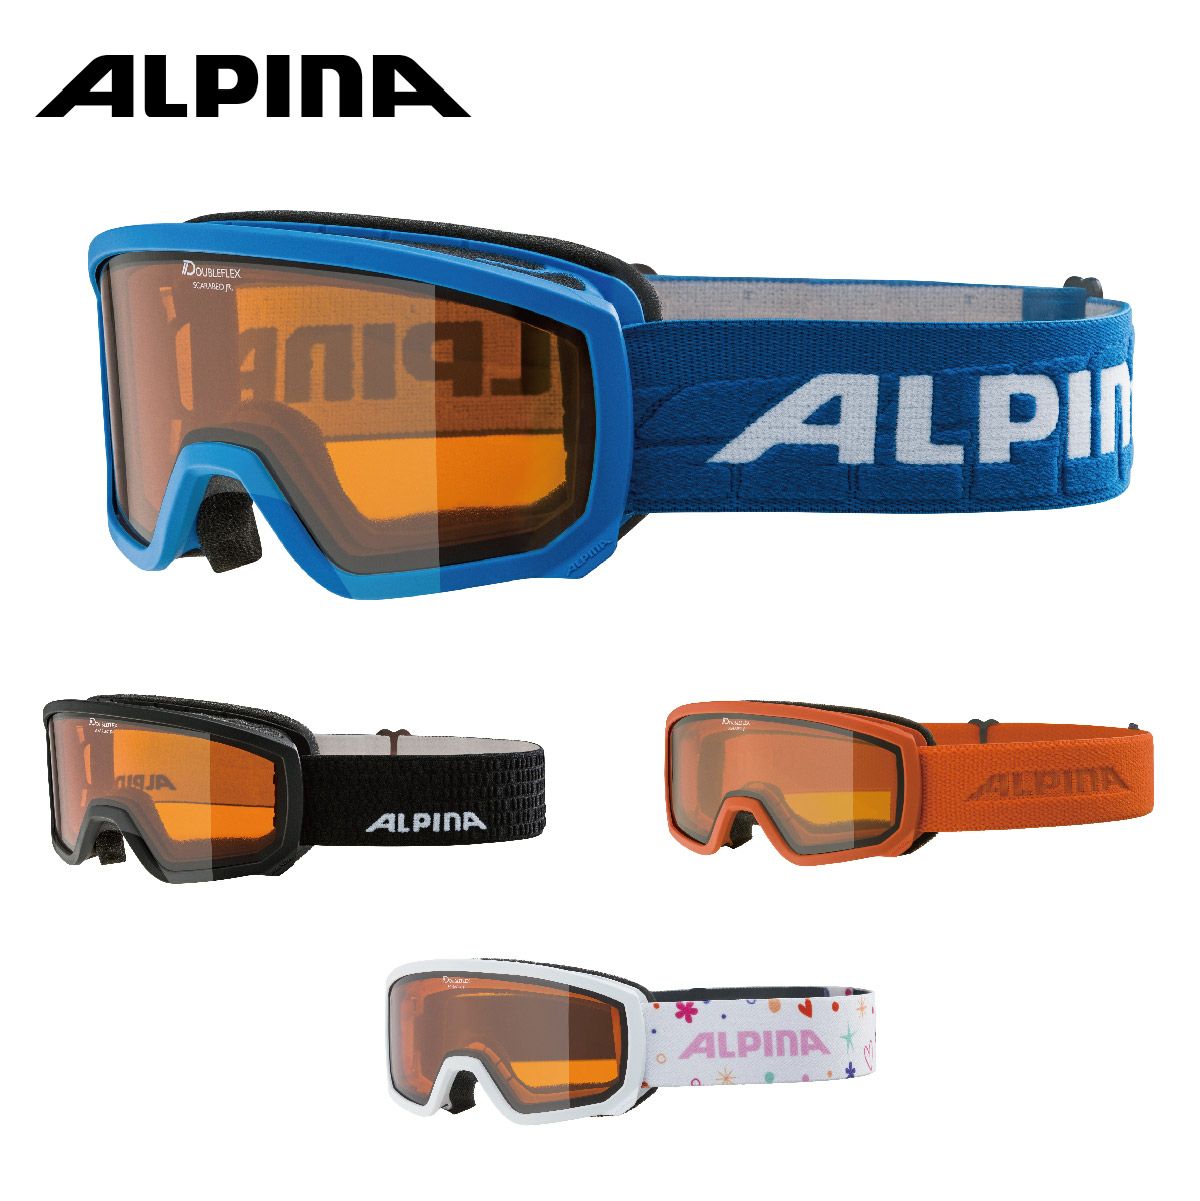 ALPINA(アルピナ) スキースノーボードゴーグル ユニセックス コンパクトタイプ 偏光ミラーレンズ メガネ使用可 ESTETICA QH